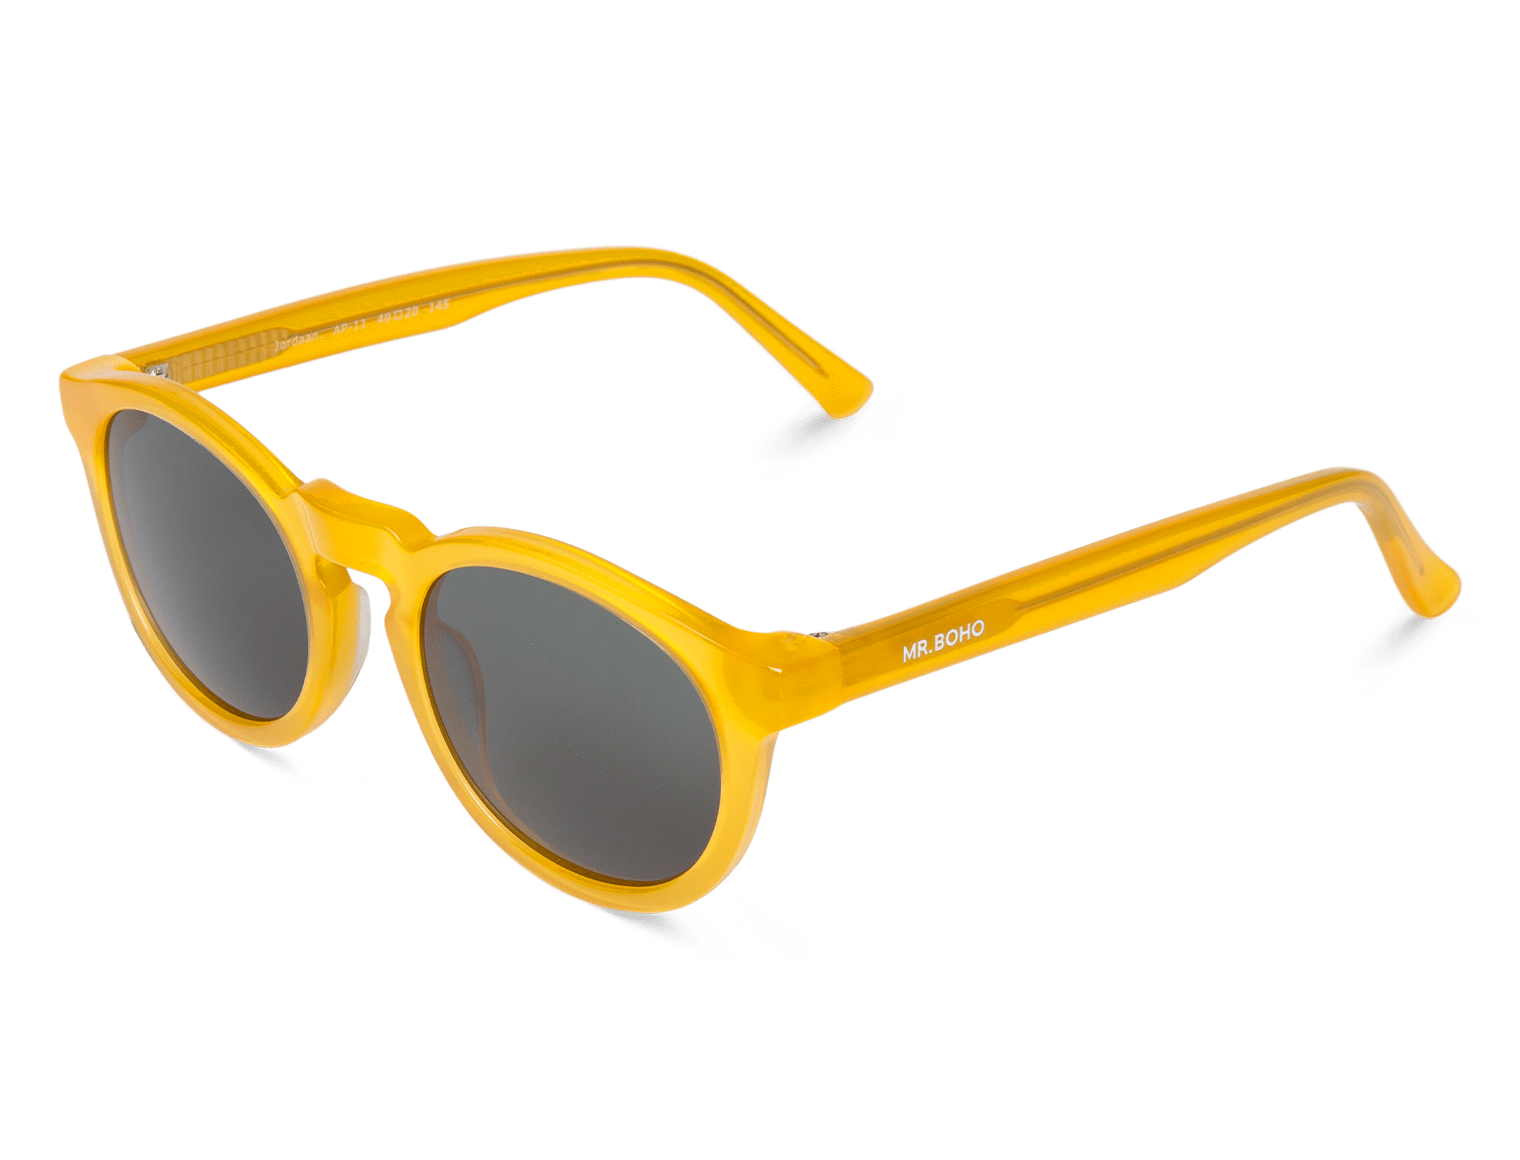 Gafas de sol Mr. Boho Jordaan AI41-11 - Ópticas Avenida